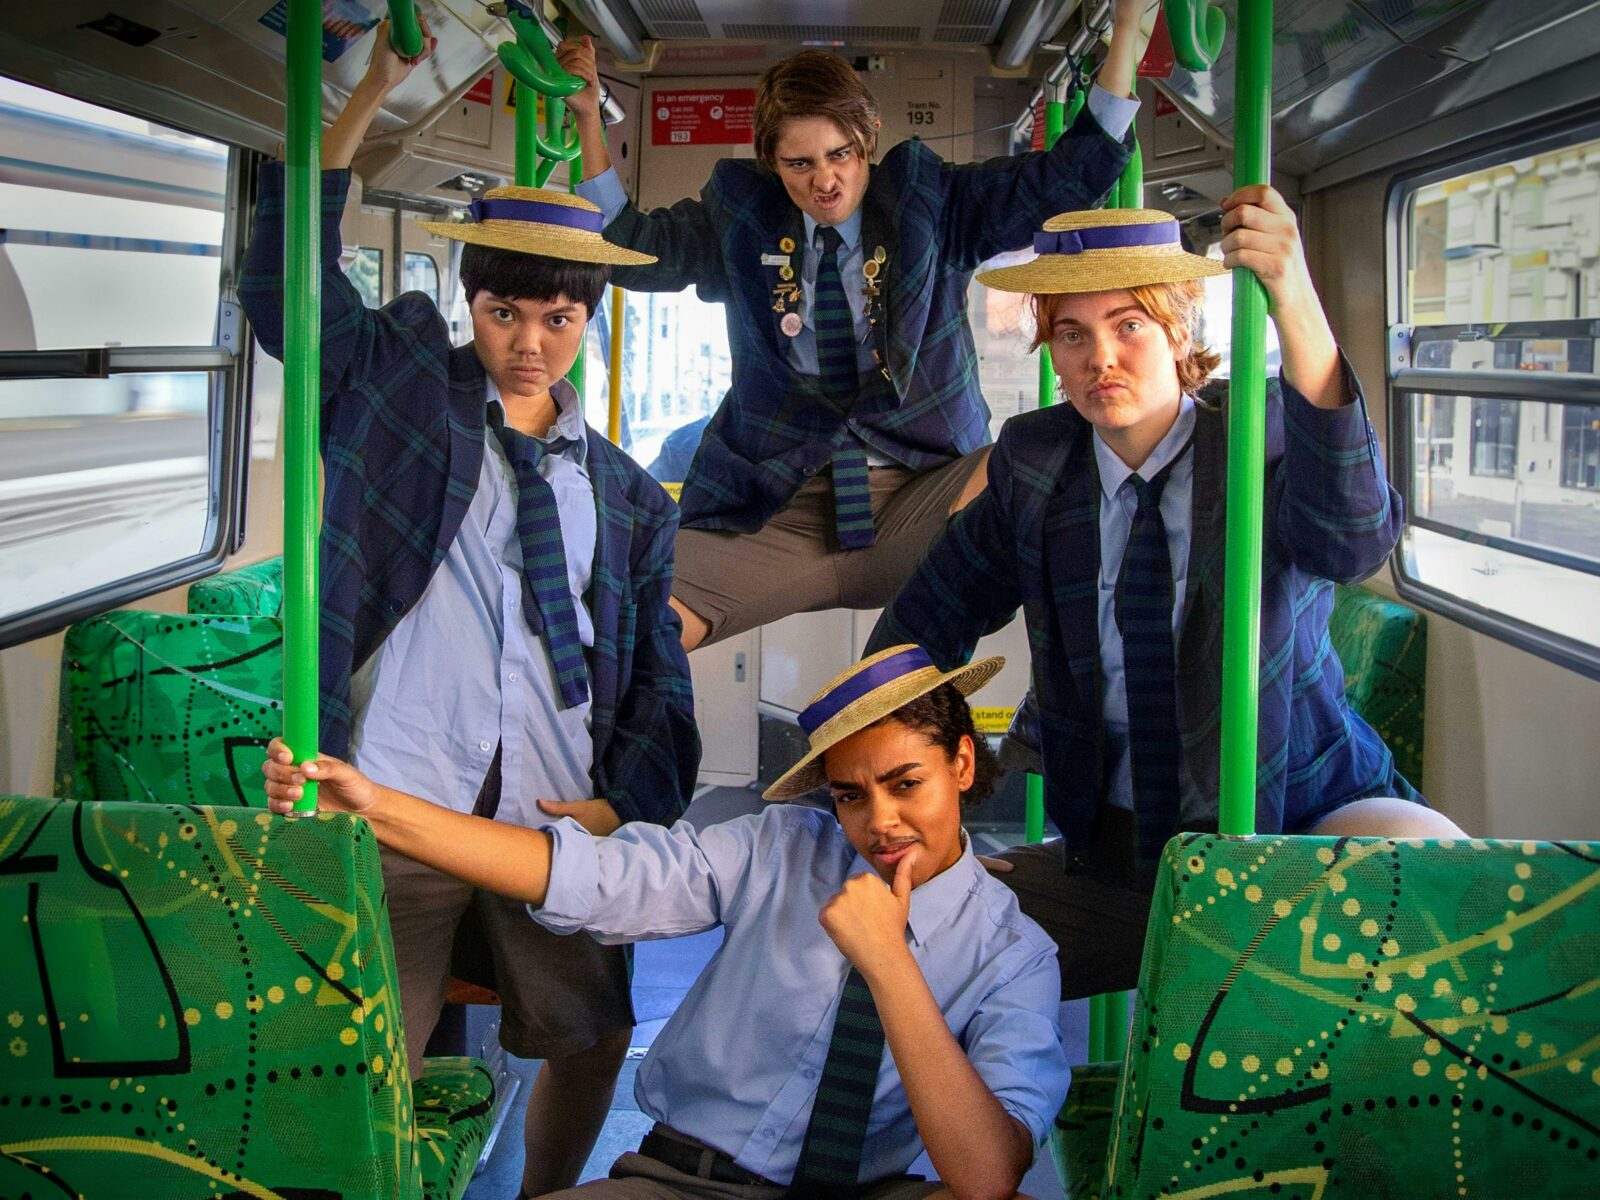 Four figures inside tram posing in school uniforms.